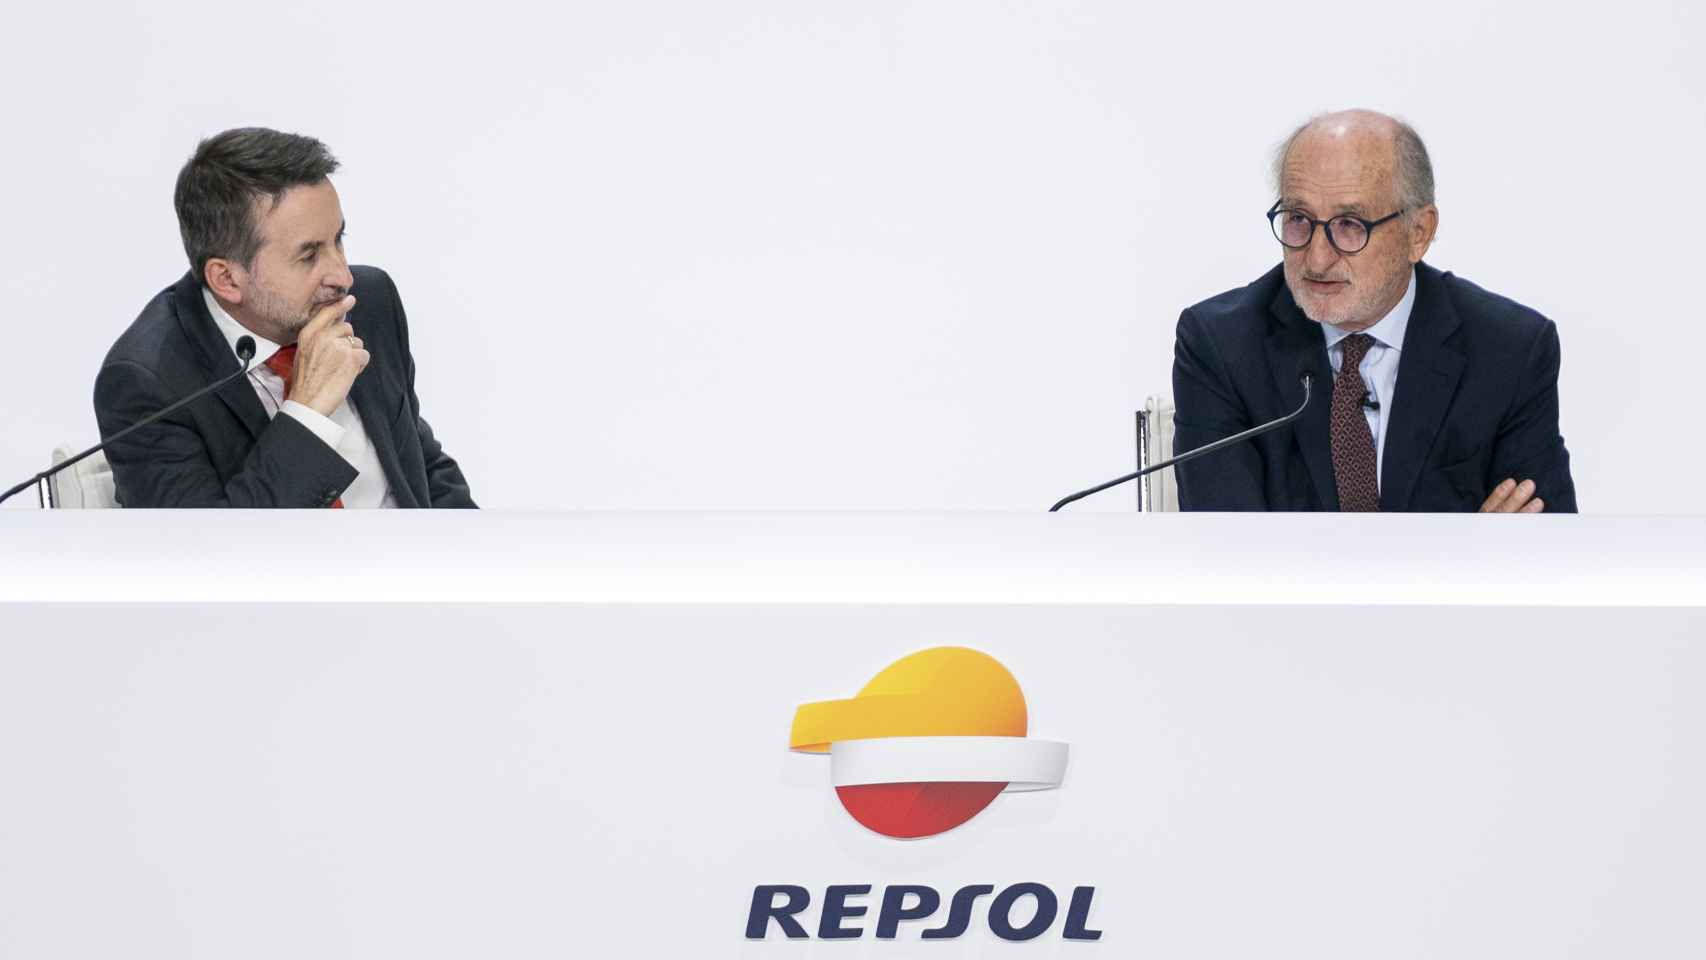 El consejero delegado de Repsol, Josu Jon Imaz (i), y el presidente de Repsol, Antonio Brufau